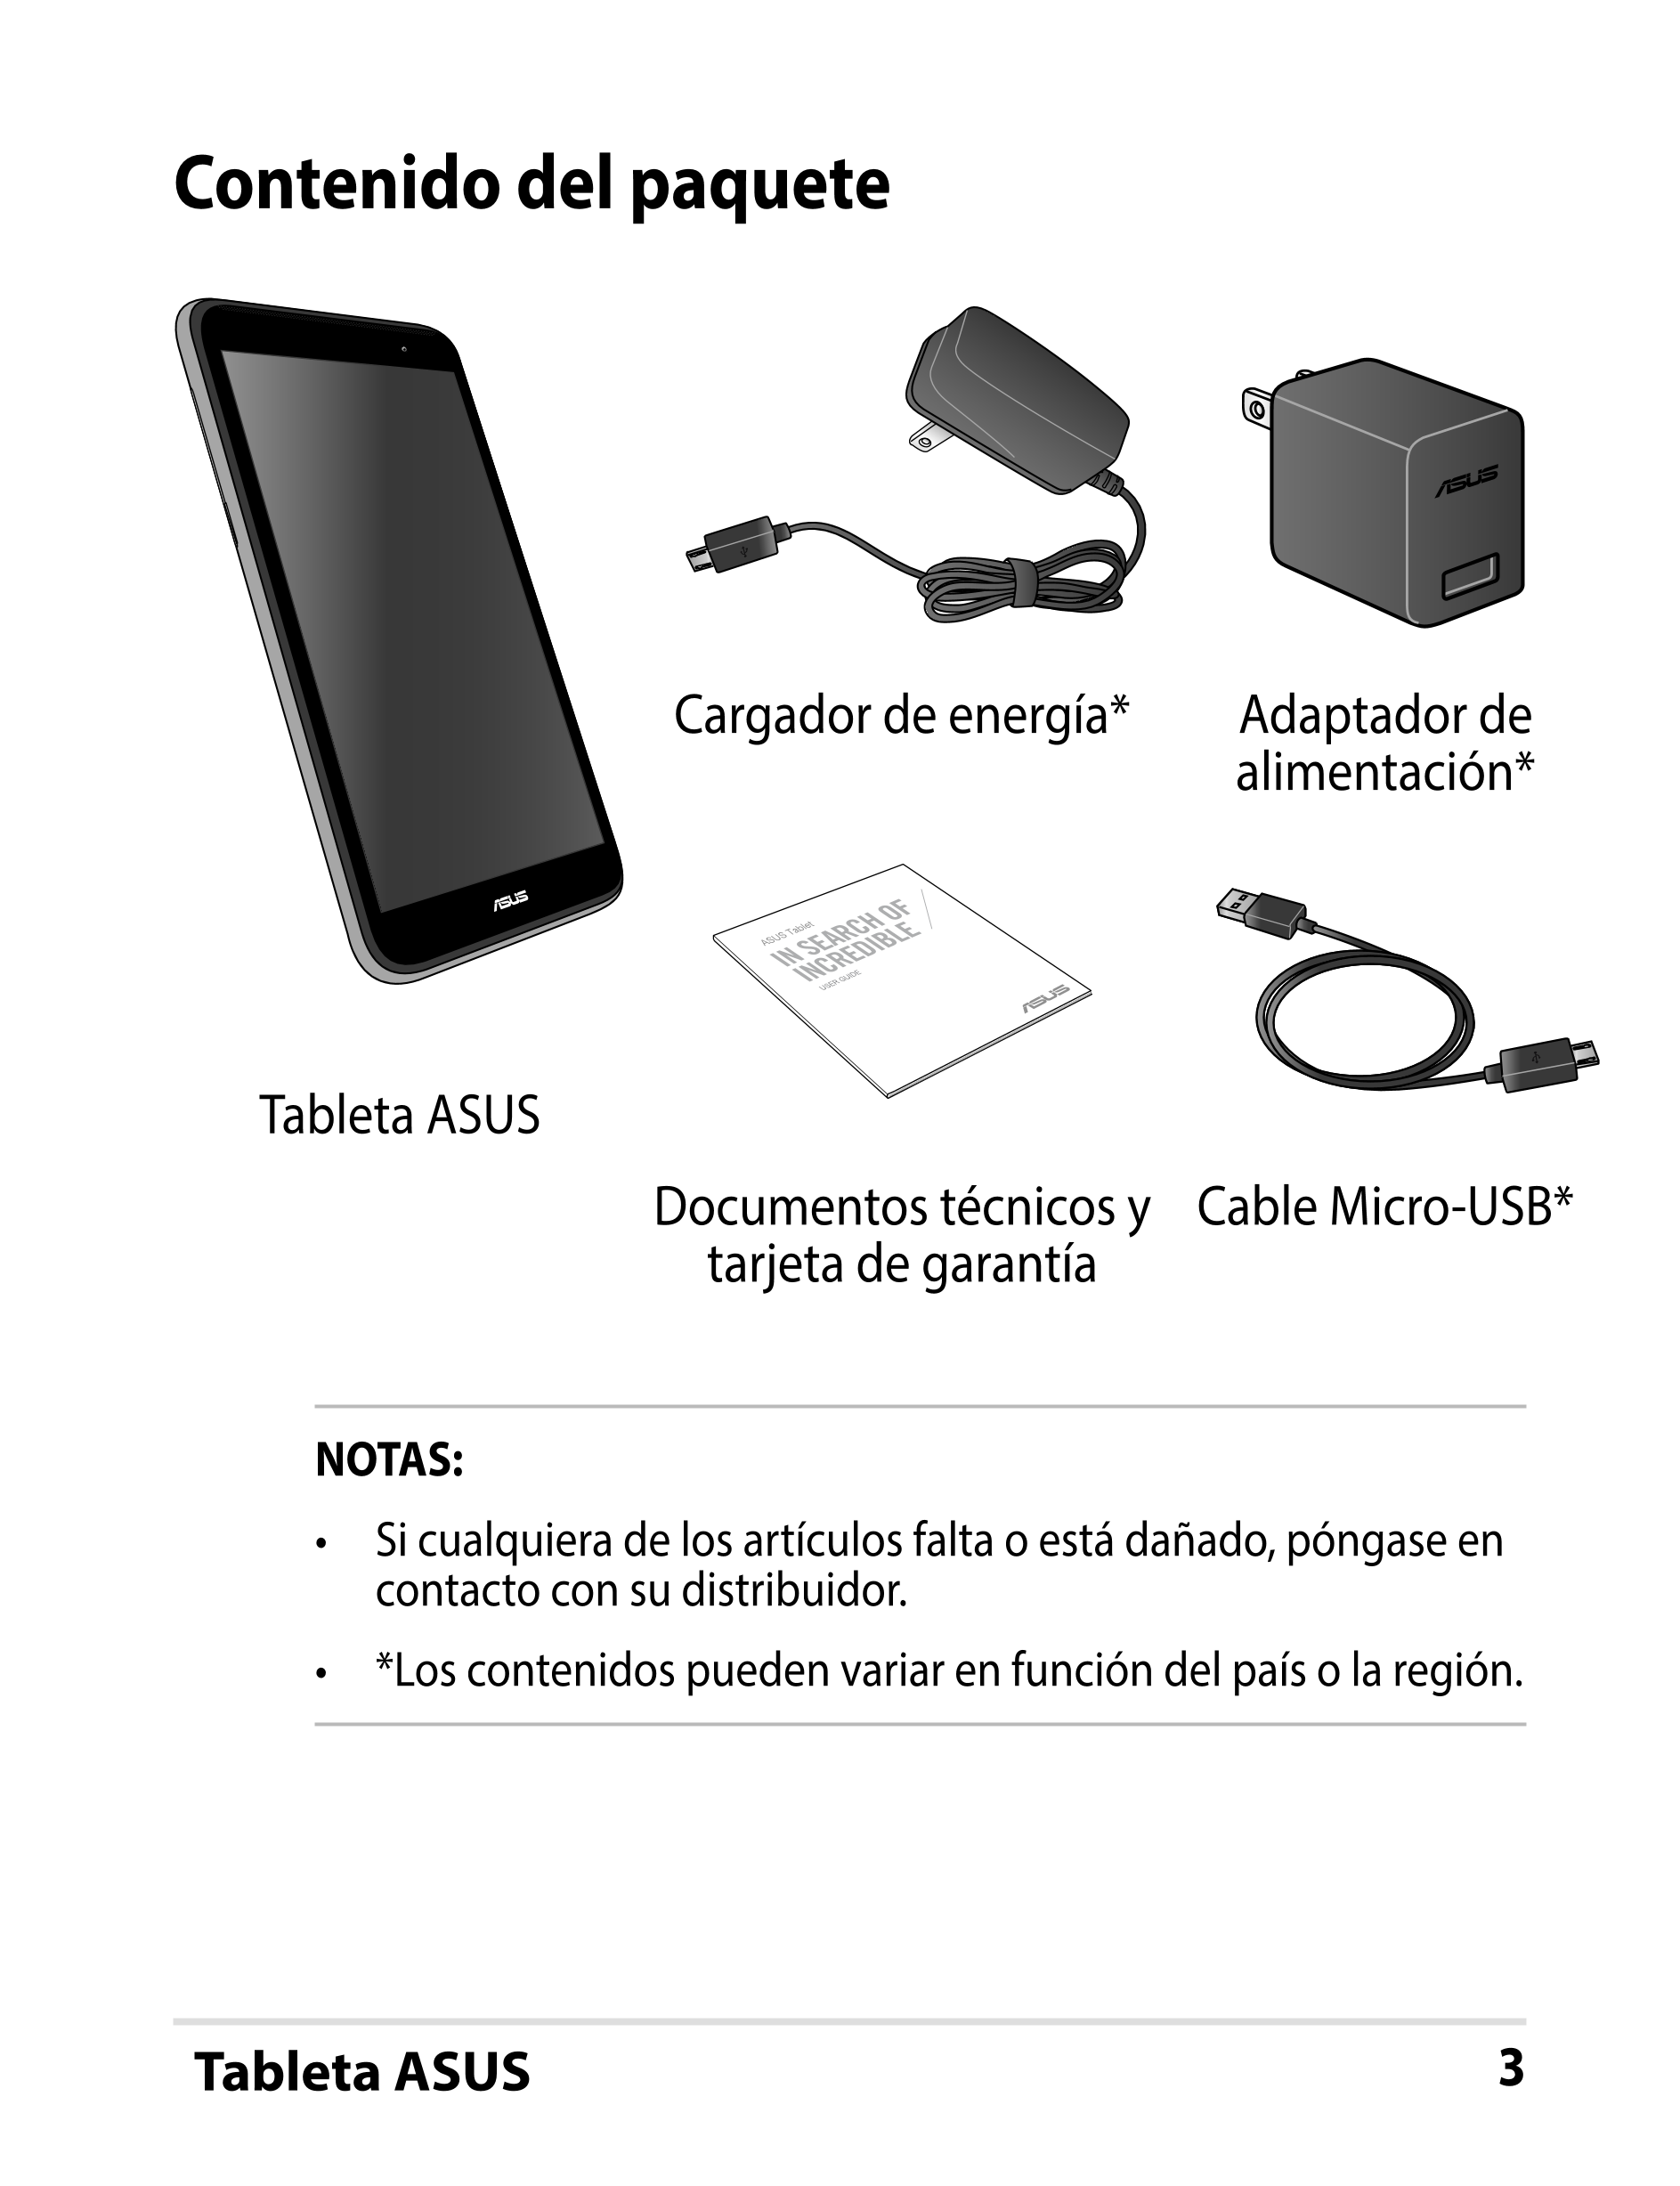 Contenido del paquete
Cargador de energía* Adaptador de 
alimentación*
ASUS Tablet
USER GUIDE
Tableta ASUS
Documentos técnicos y